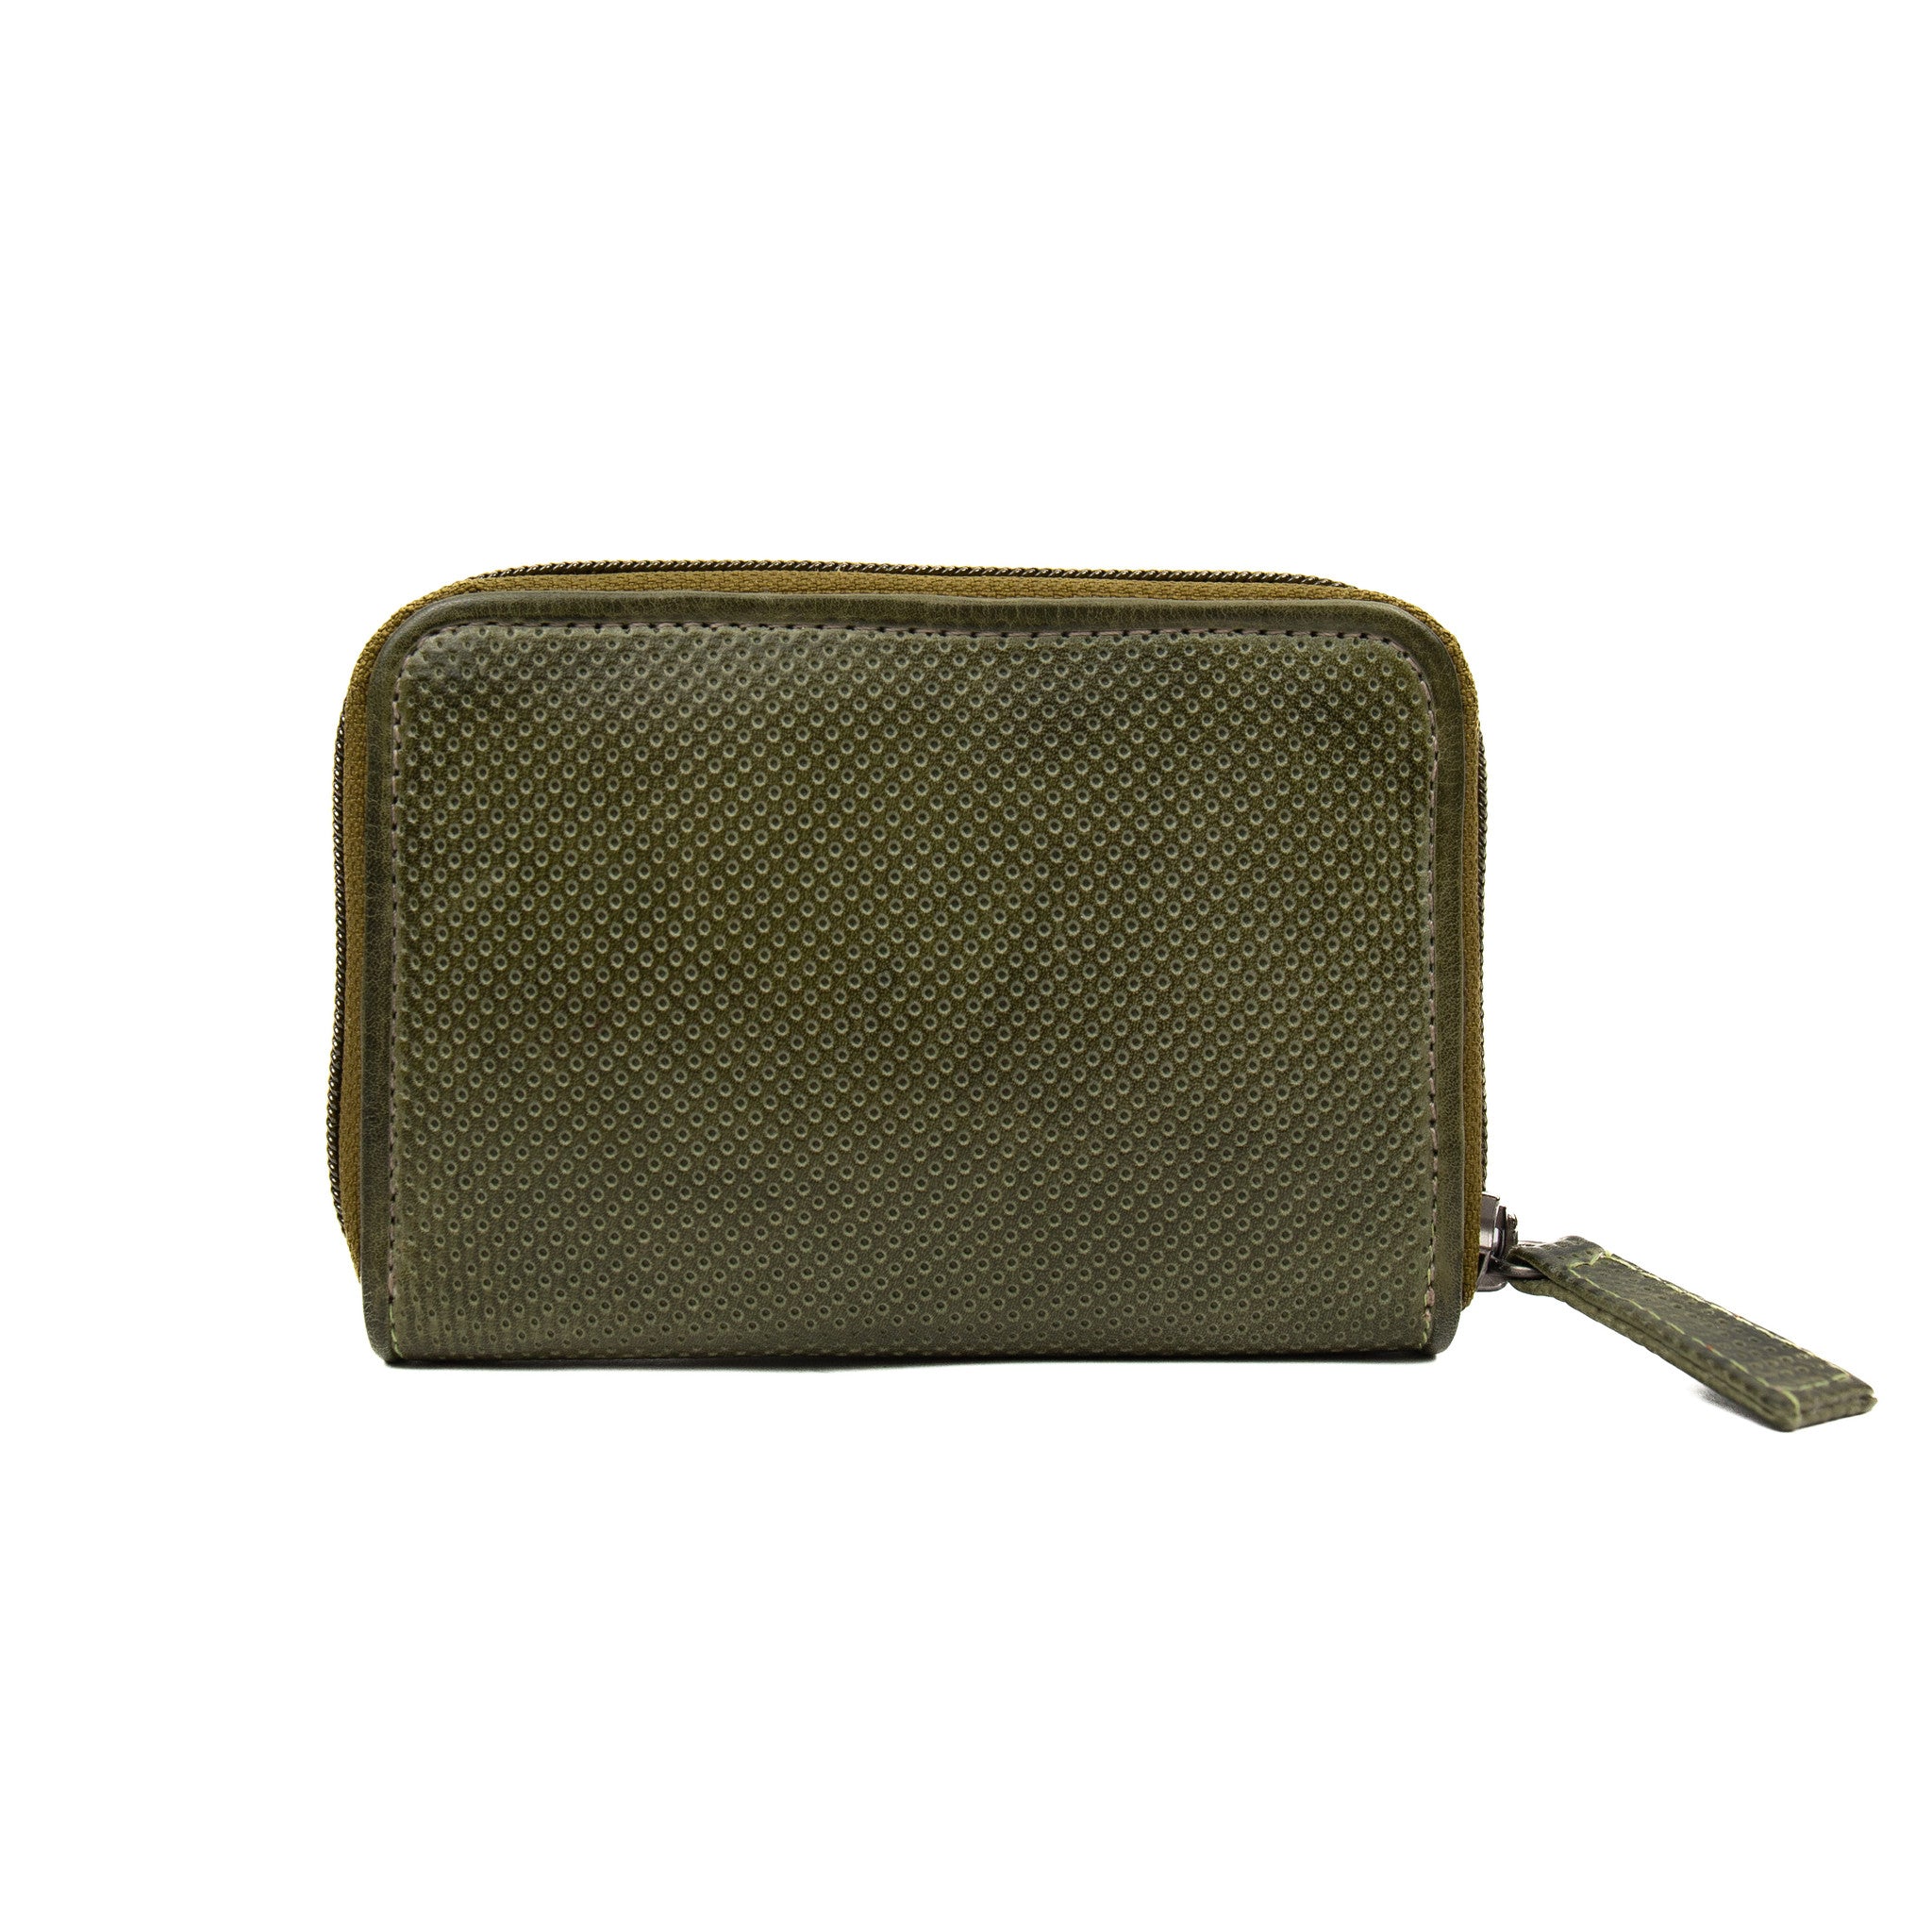 Wallet 'Mika' green - DB 11079